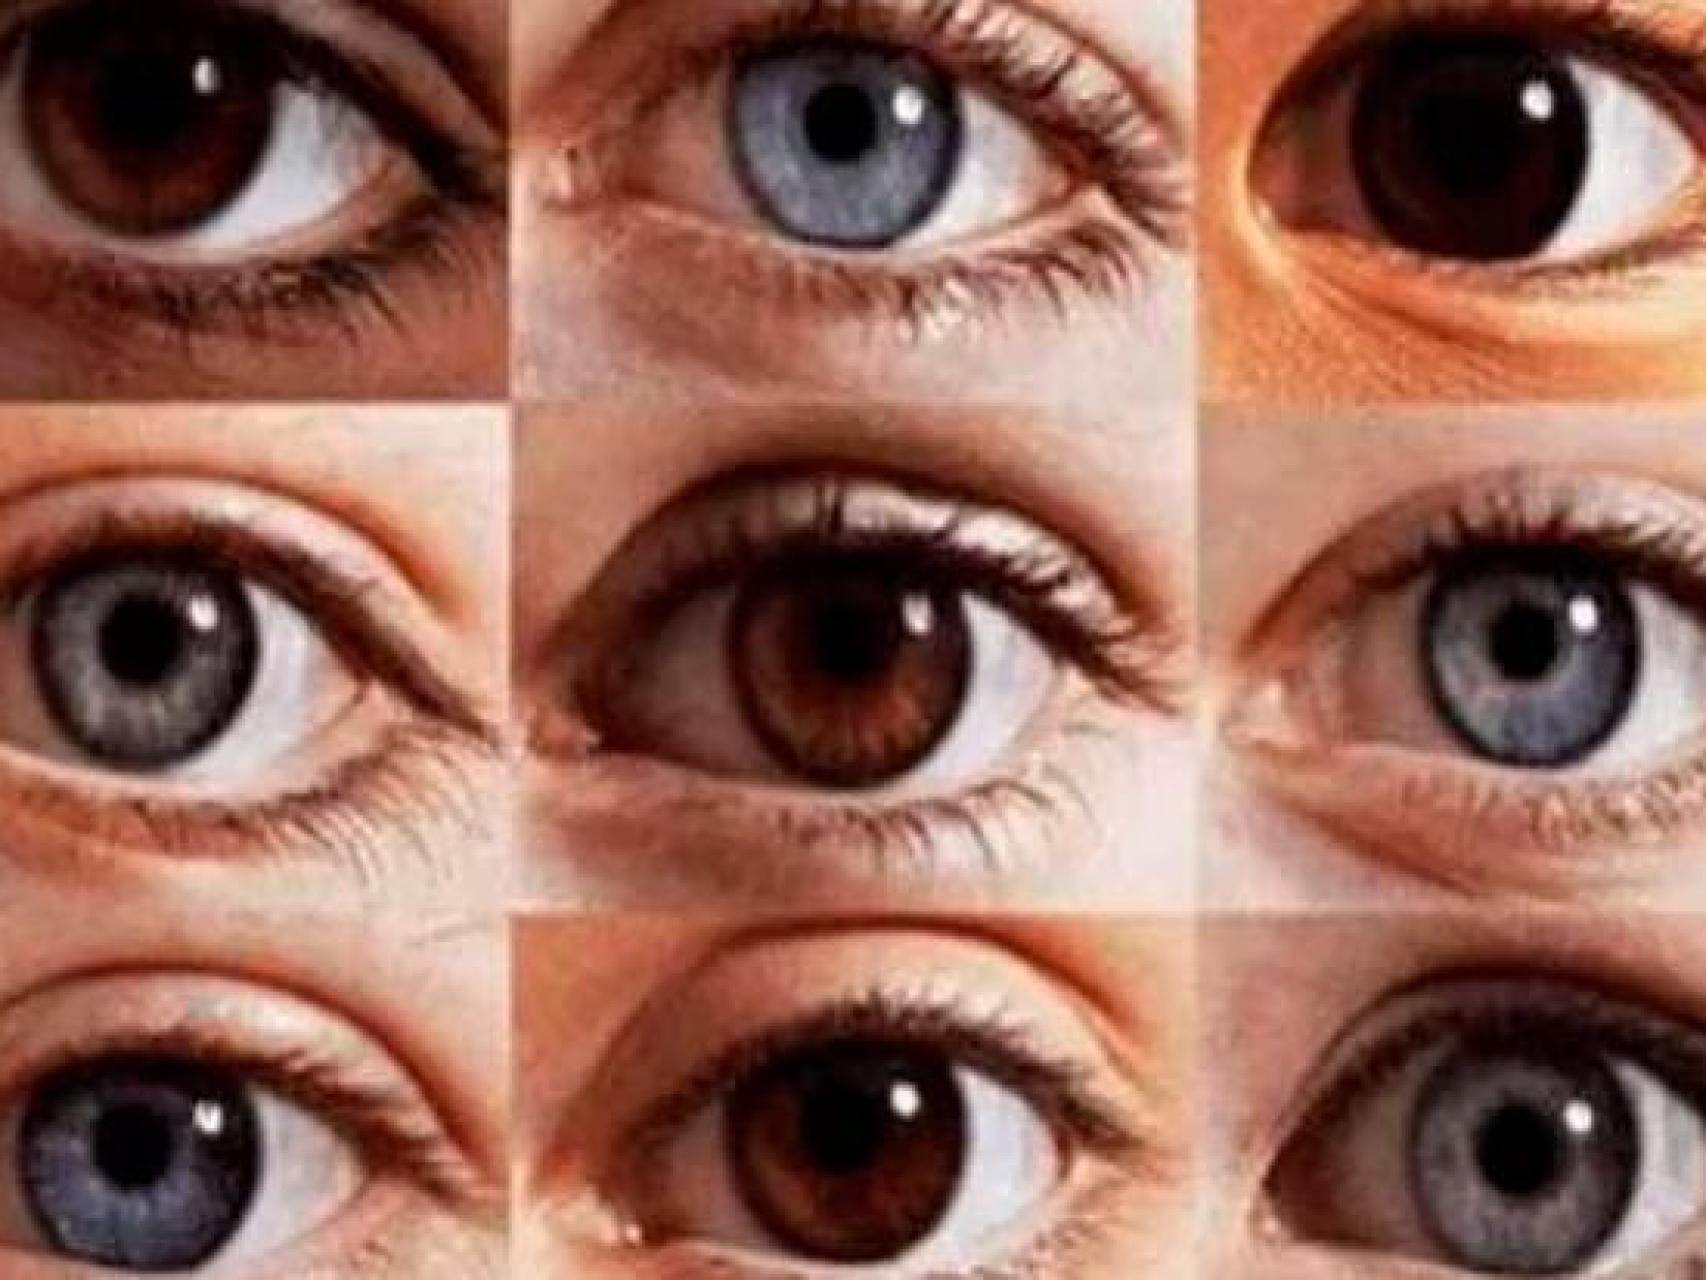 Científicos descubren condiciones bajo las cuales el ojo humano es